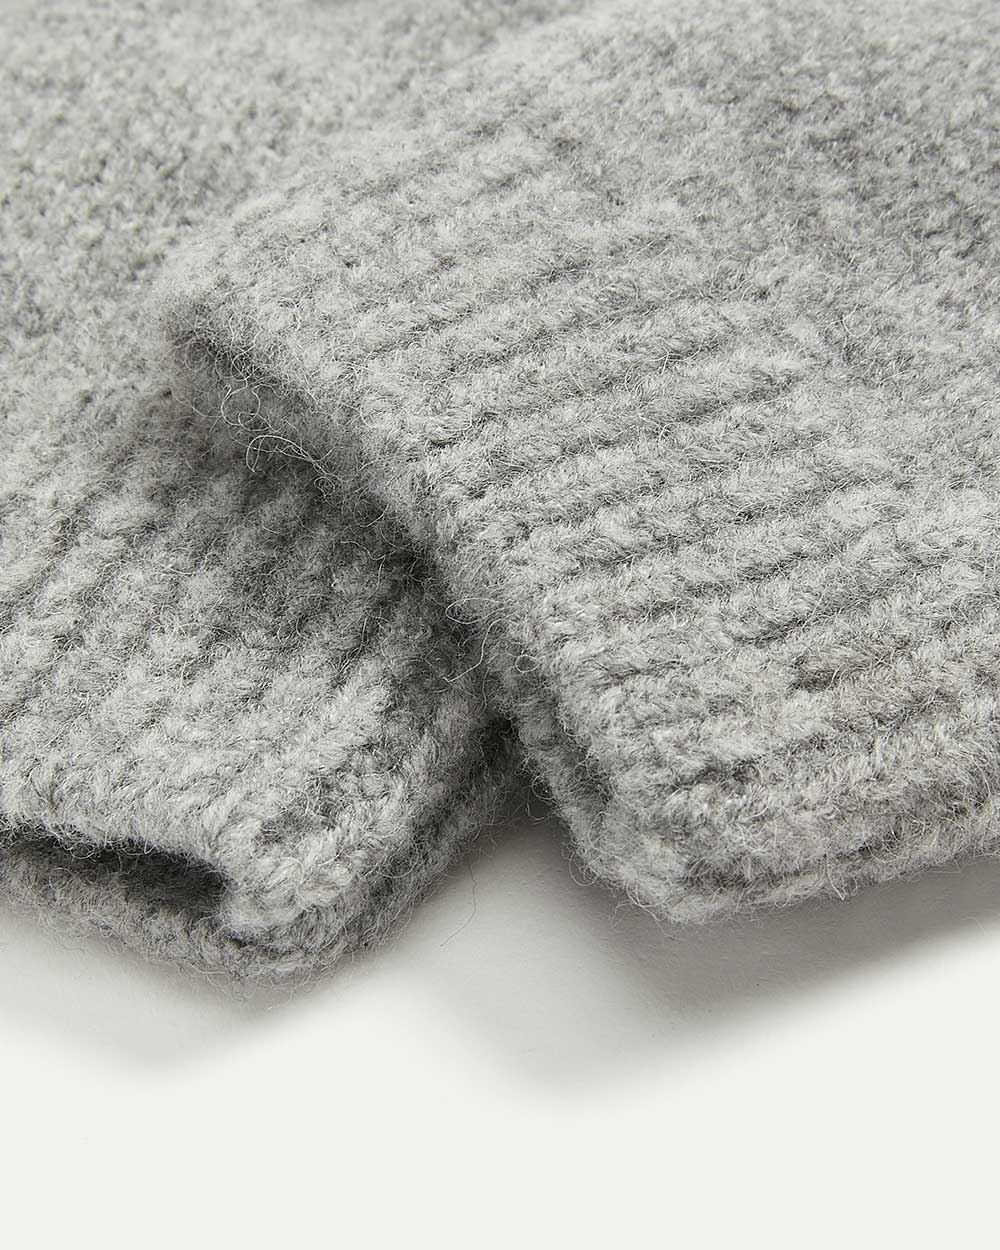 Mitaines en tricot, doublées de tissu polaire